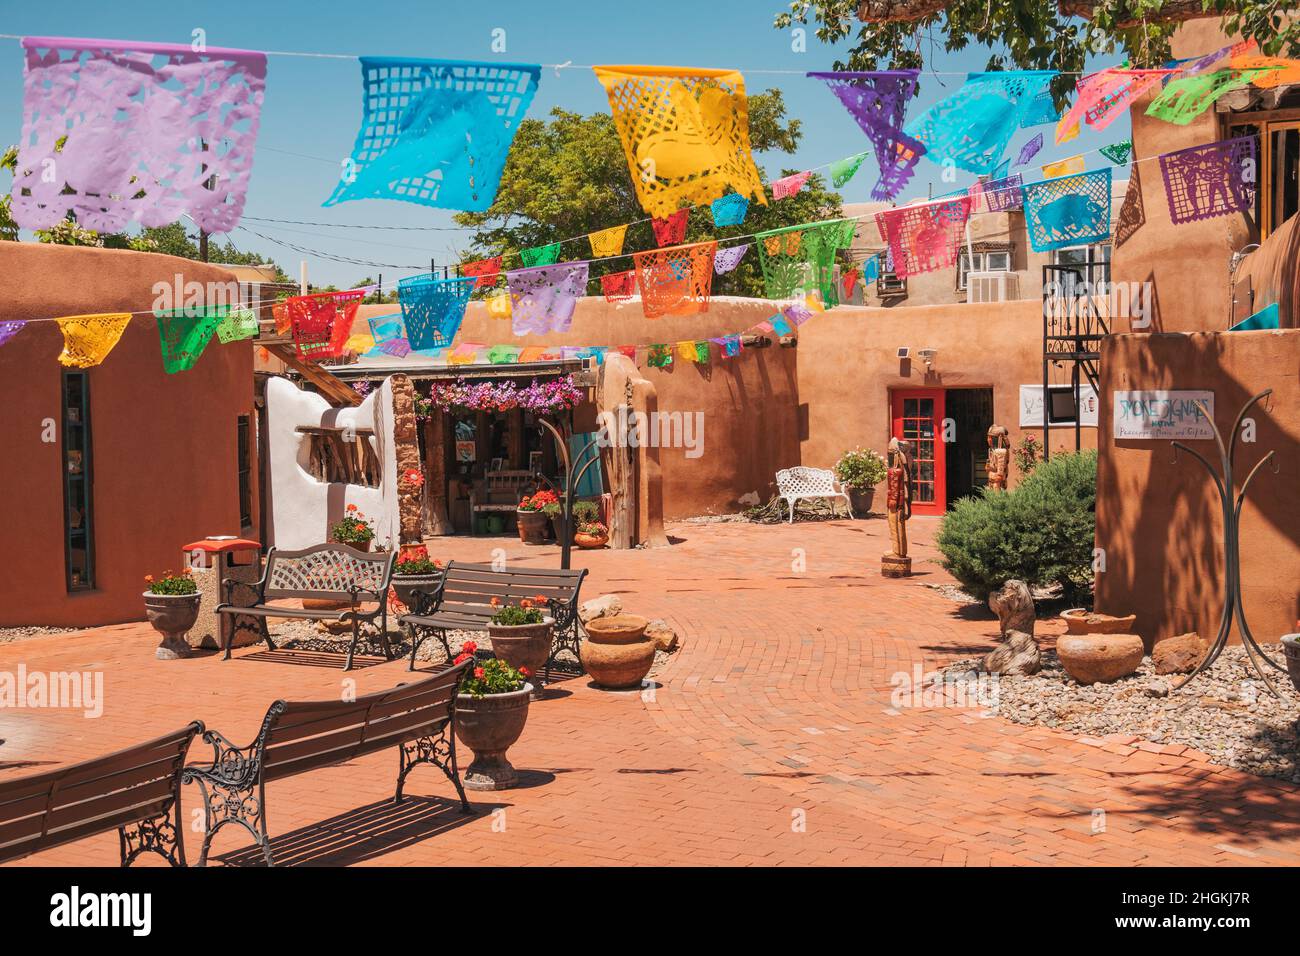 Il centro storico poco A poco Plaza, una piccola collezione di negozi artigianali a Albuquerque, New Mexico Foto Stock